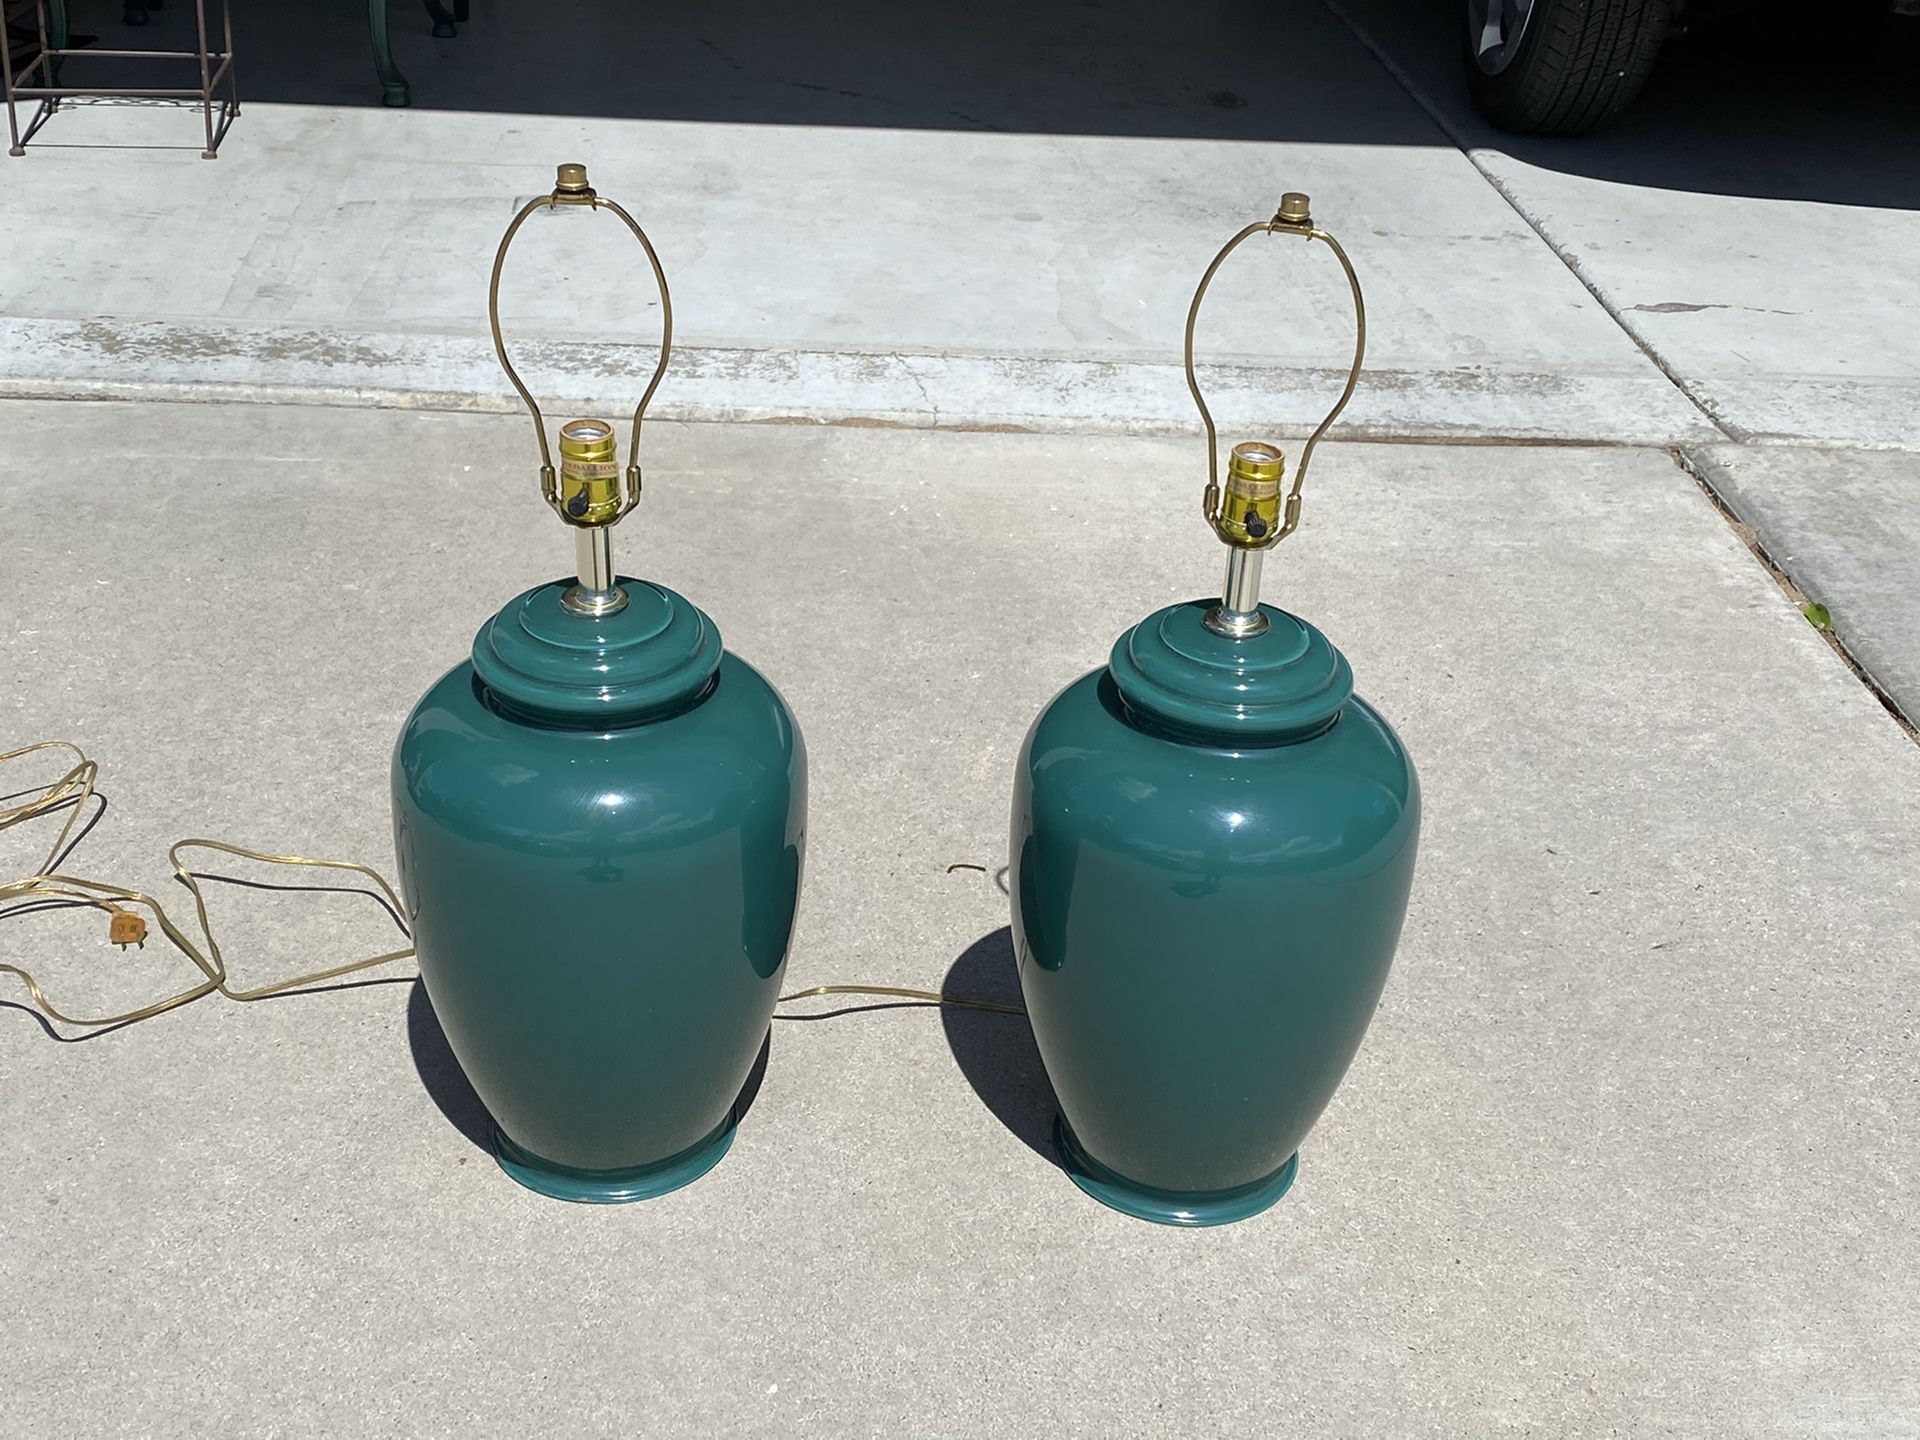 Lamps - $5 each